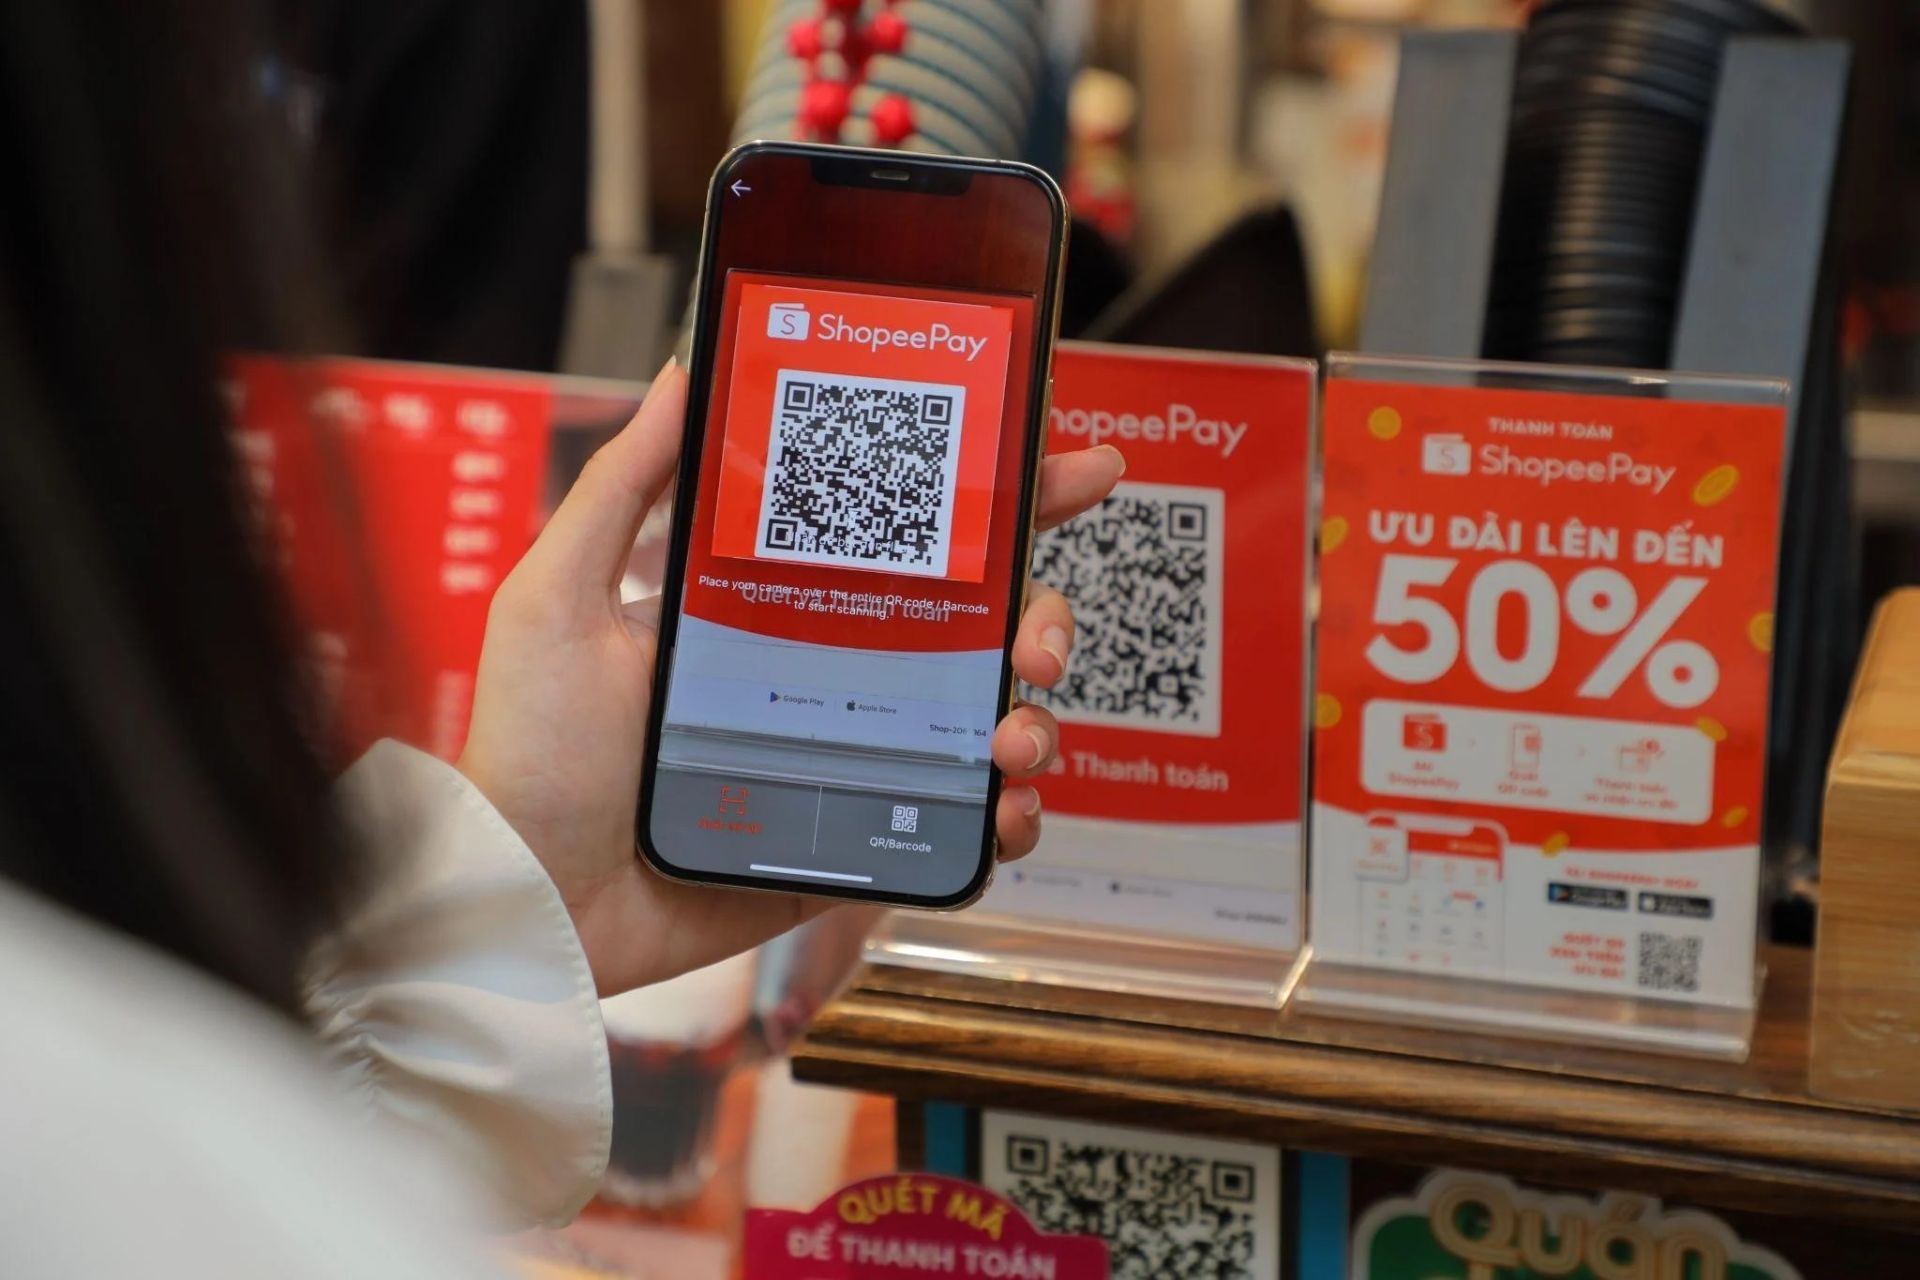 ShopeePay đang trở thành một trong những lựa chọn hàng đầu cho nhu cầu thanh toán trực tuyến của người dùng Việt Nam.